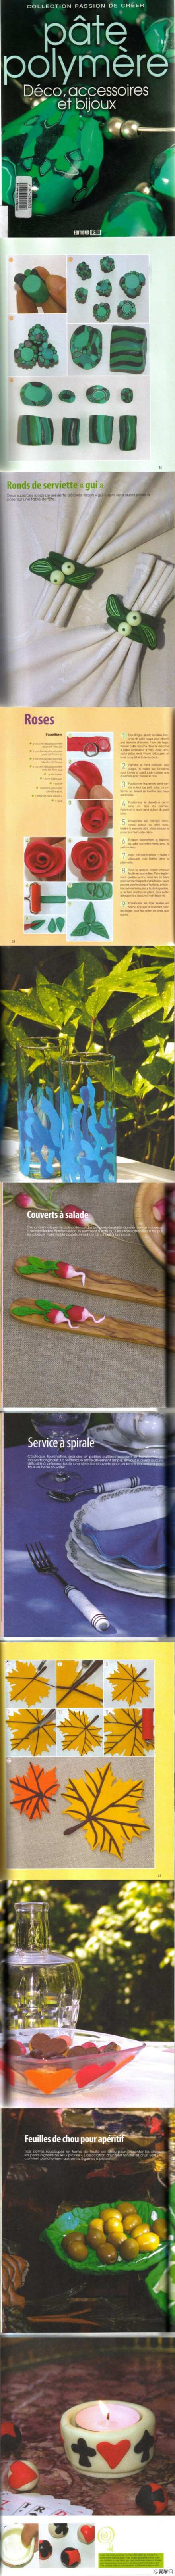 #pâte polymère#不出奇却实用的软陶教科书，http://t.cn/zQirybC。大家对软陶有兴趣不，我觉得那种巧妙的揉揉捏捏很有趣哇=。=